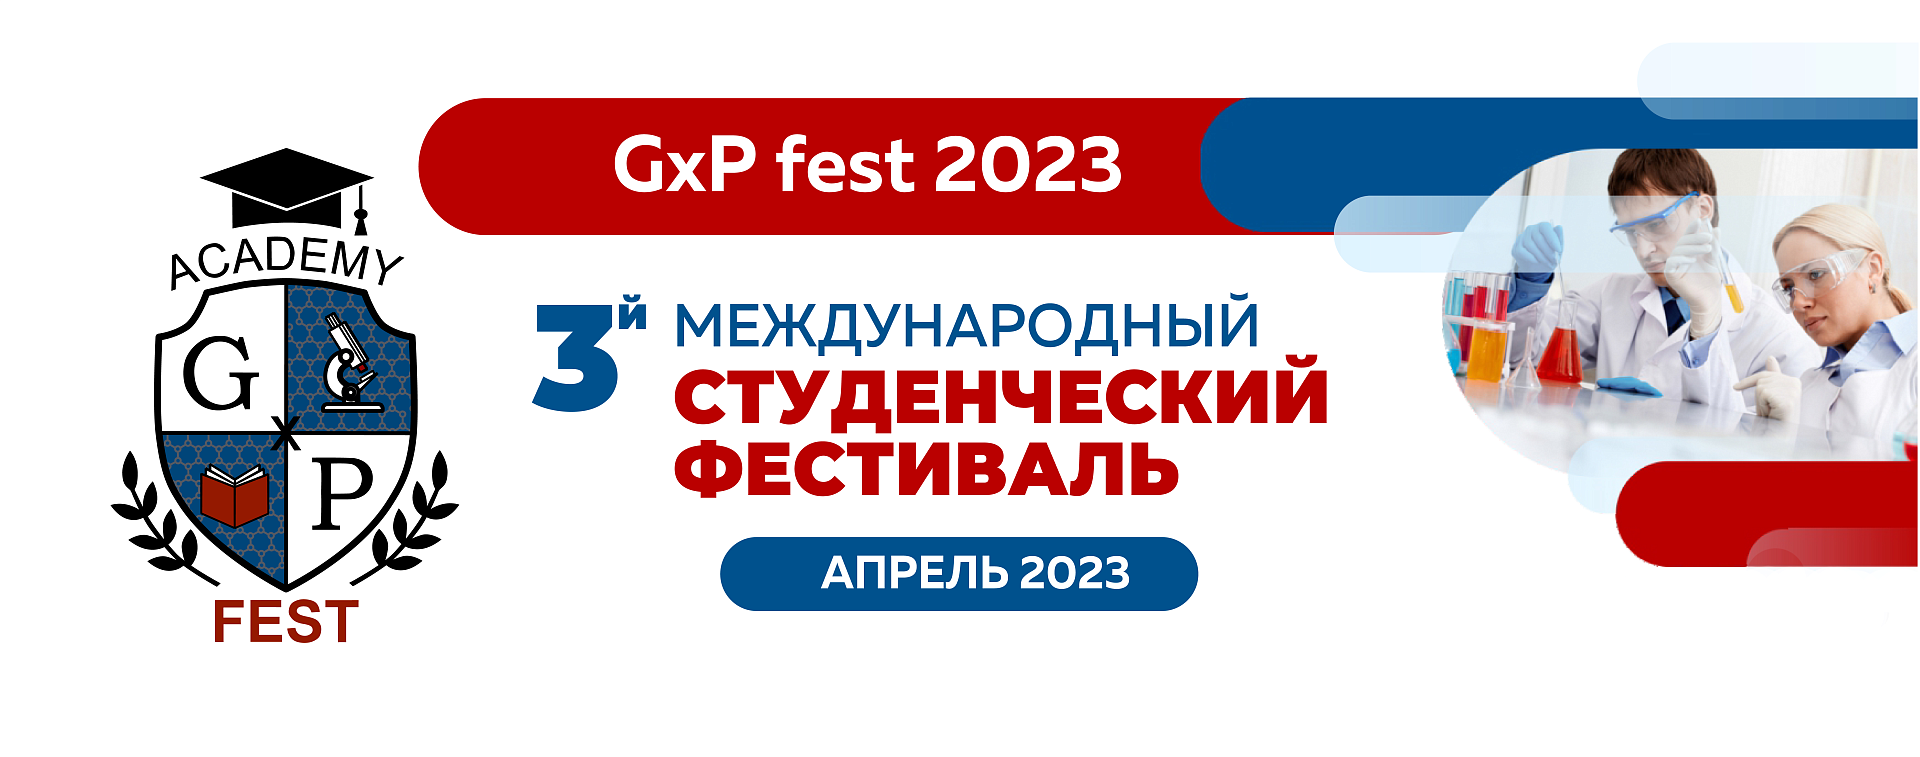 Ваш отзыв о GxP-Фесте 2023